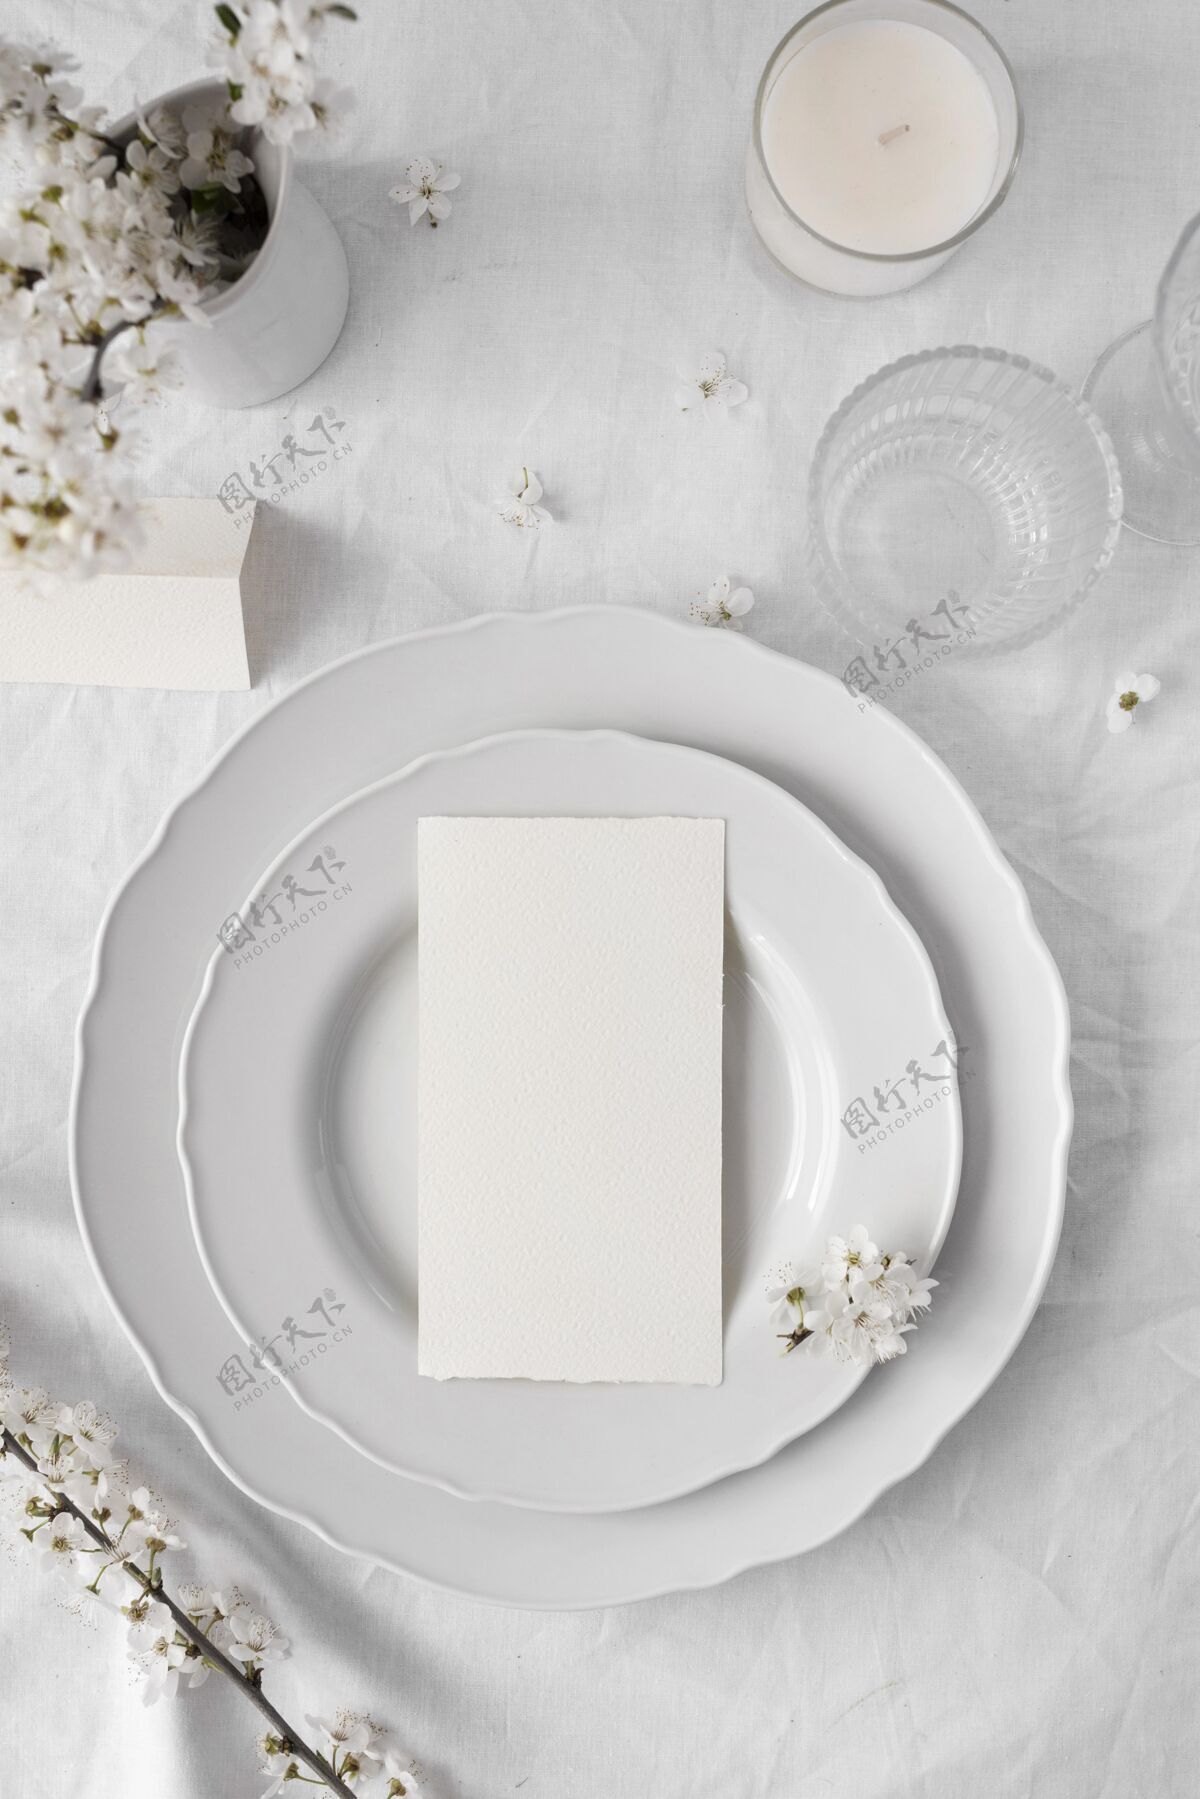 分类白色餐桌的布置 为您提供美味佳肴用餐午餐美食